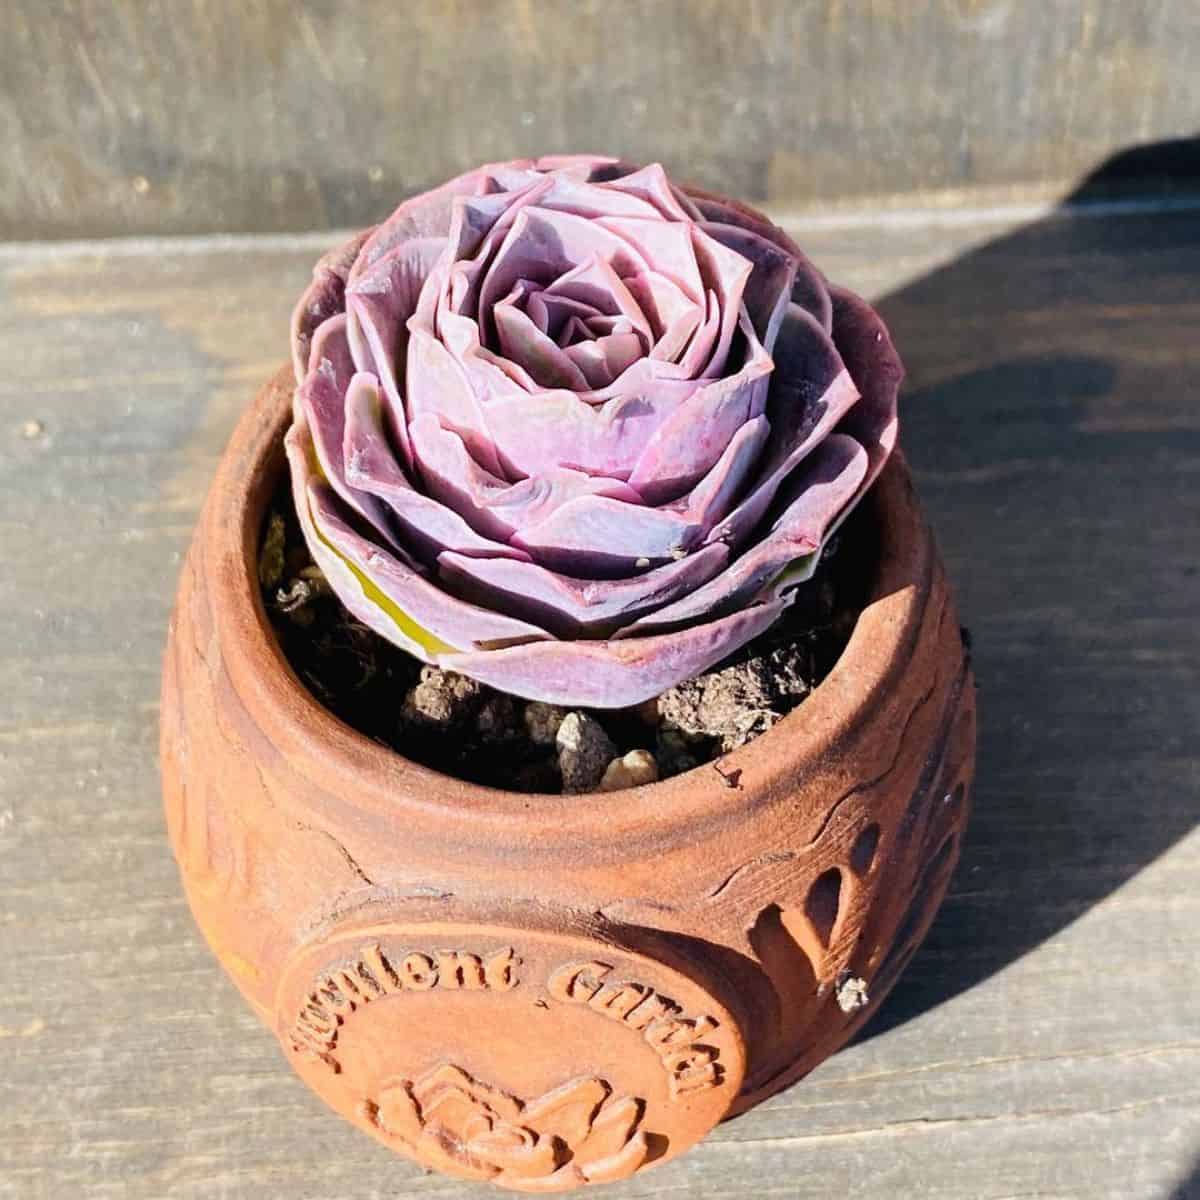 Greenovia aurea x El Hierro – Pink/Peach Mountain Rose grows in a clay pot.